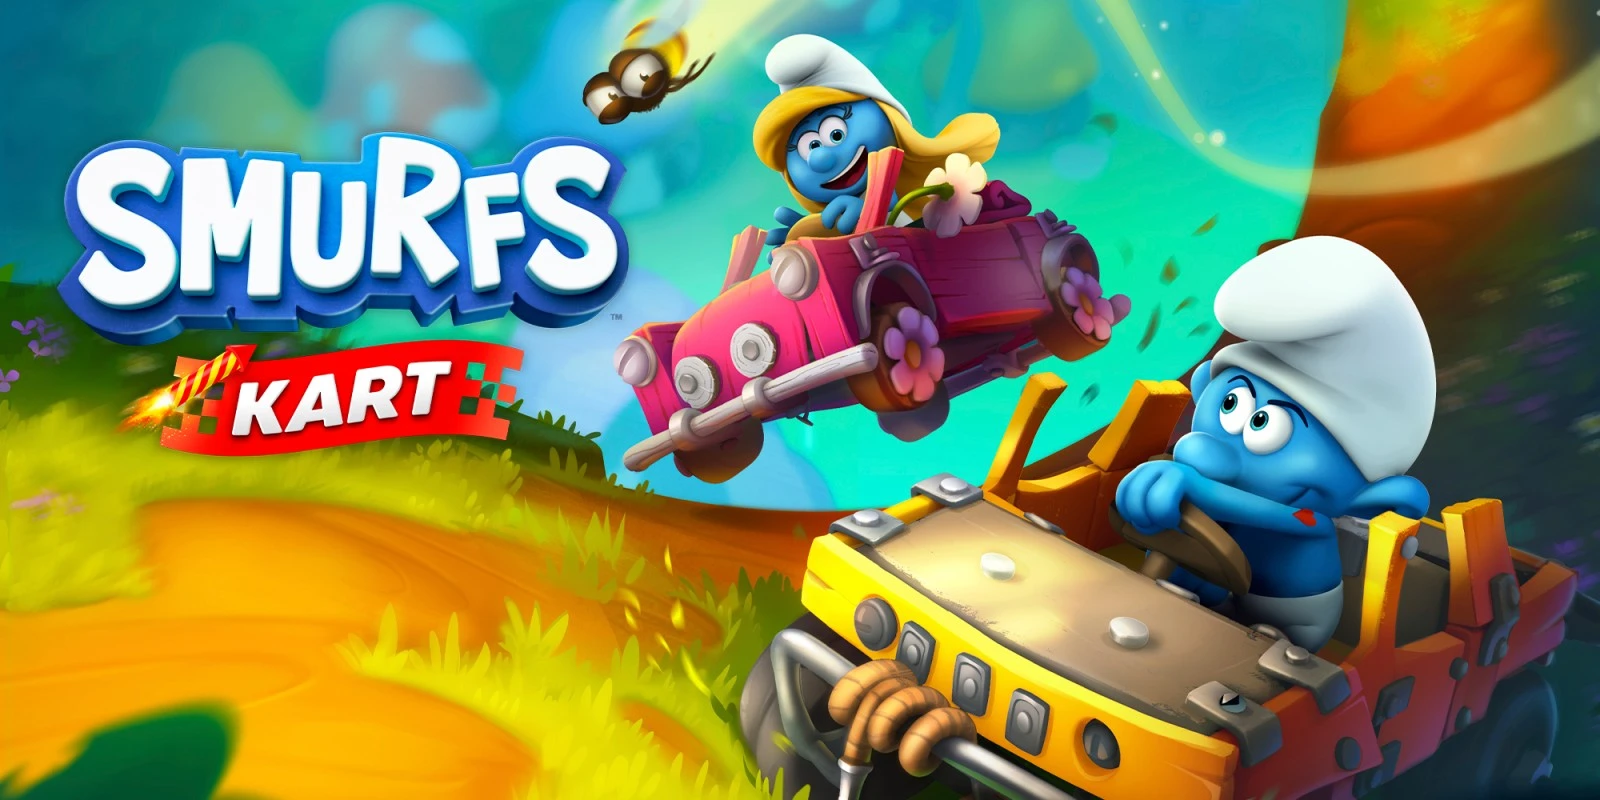 Smurfs Kart arribarà en format físic per a PlayStation i Xbox